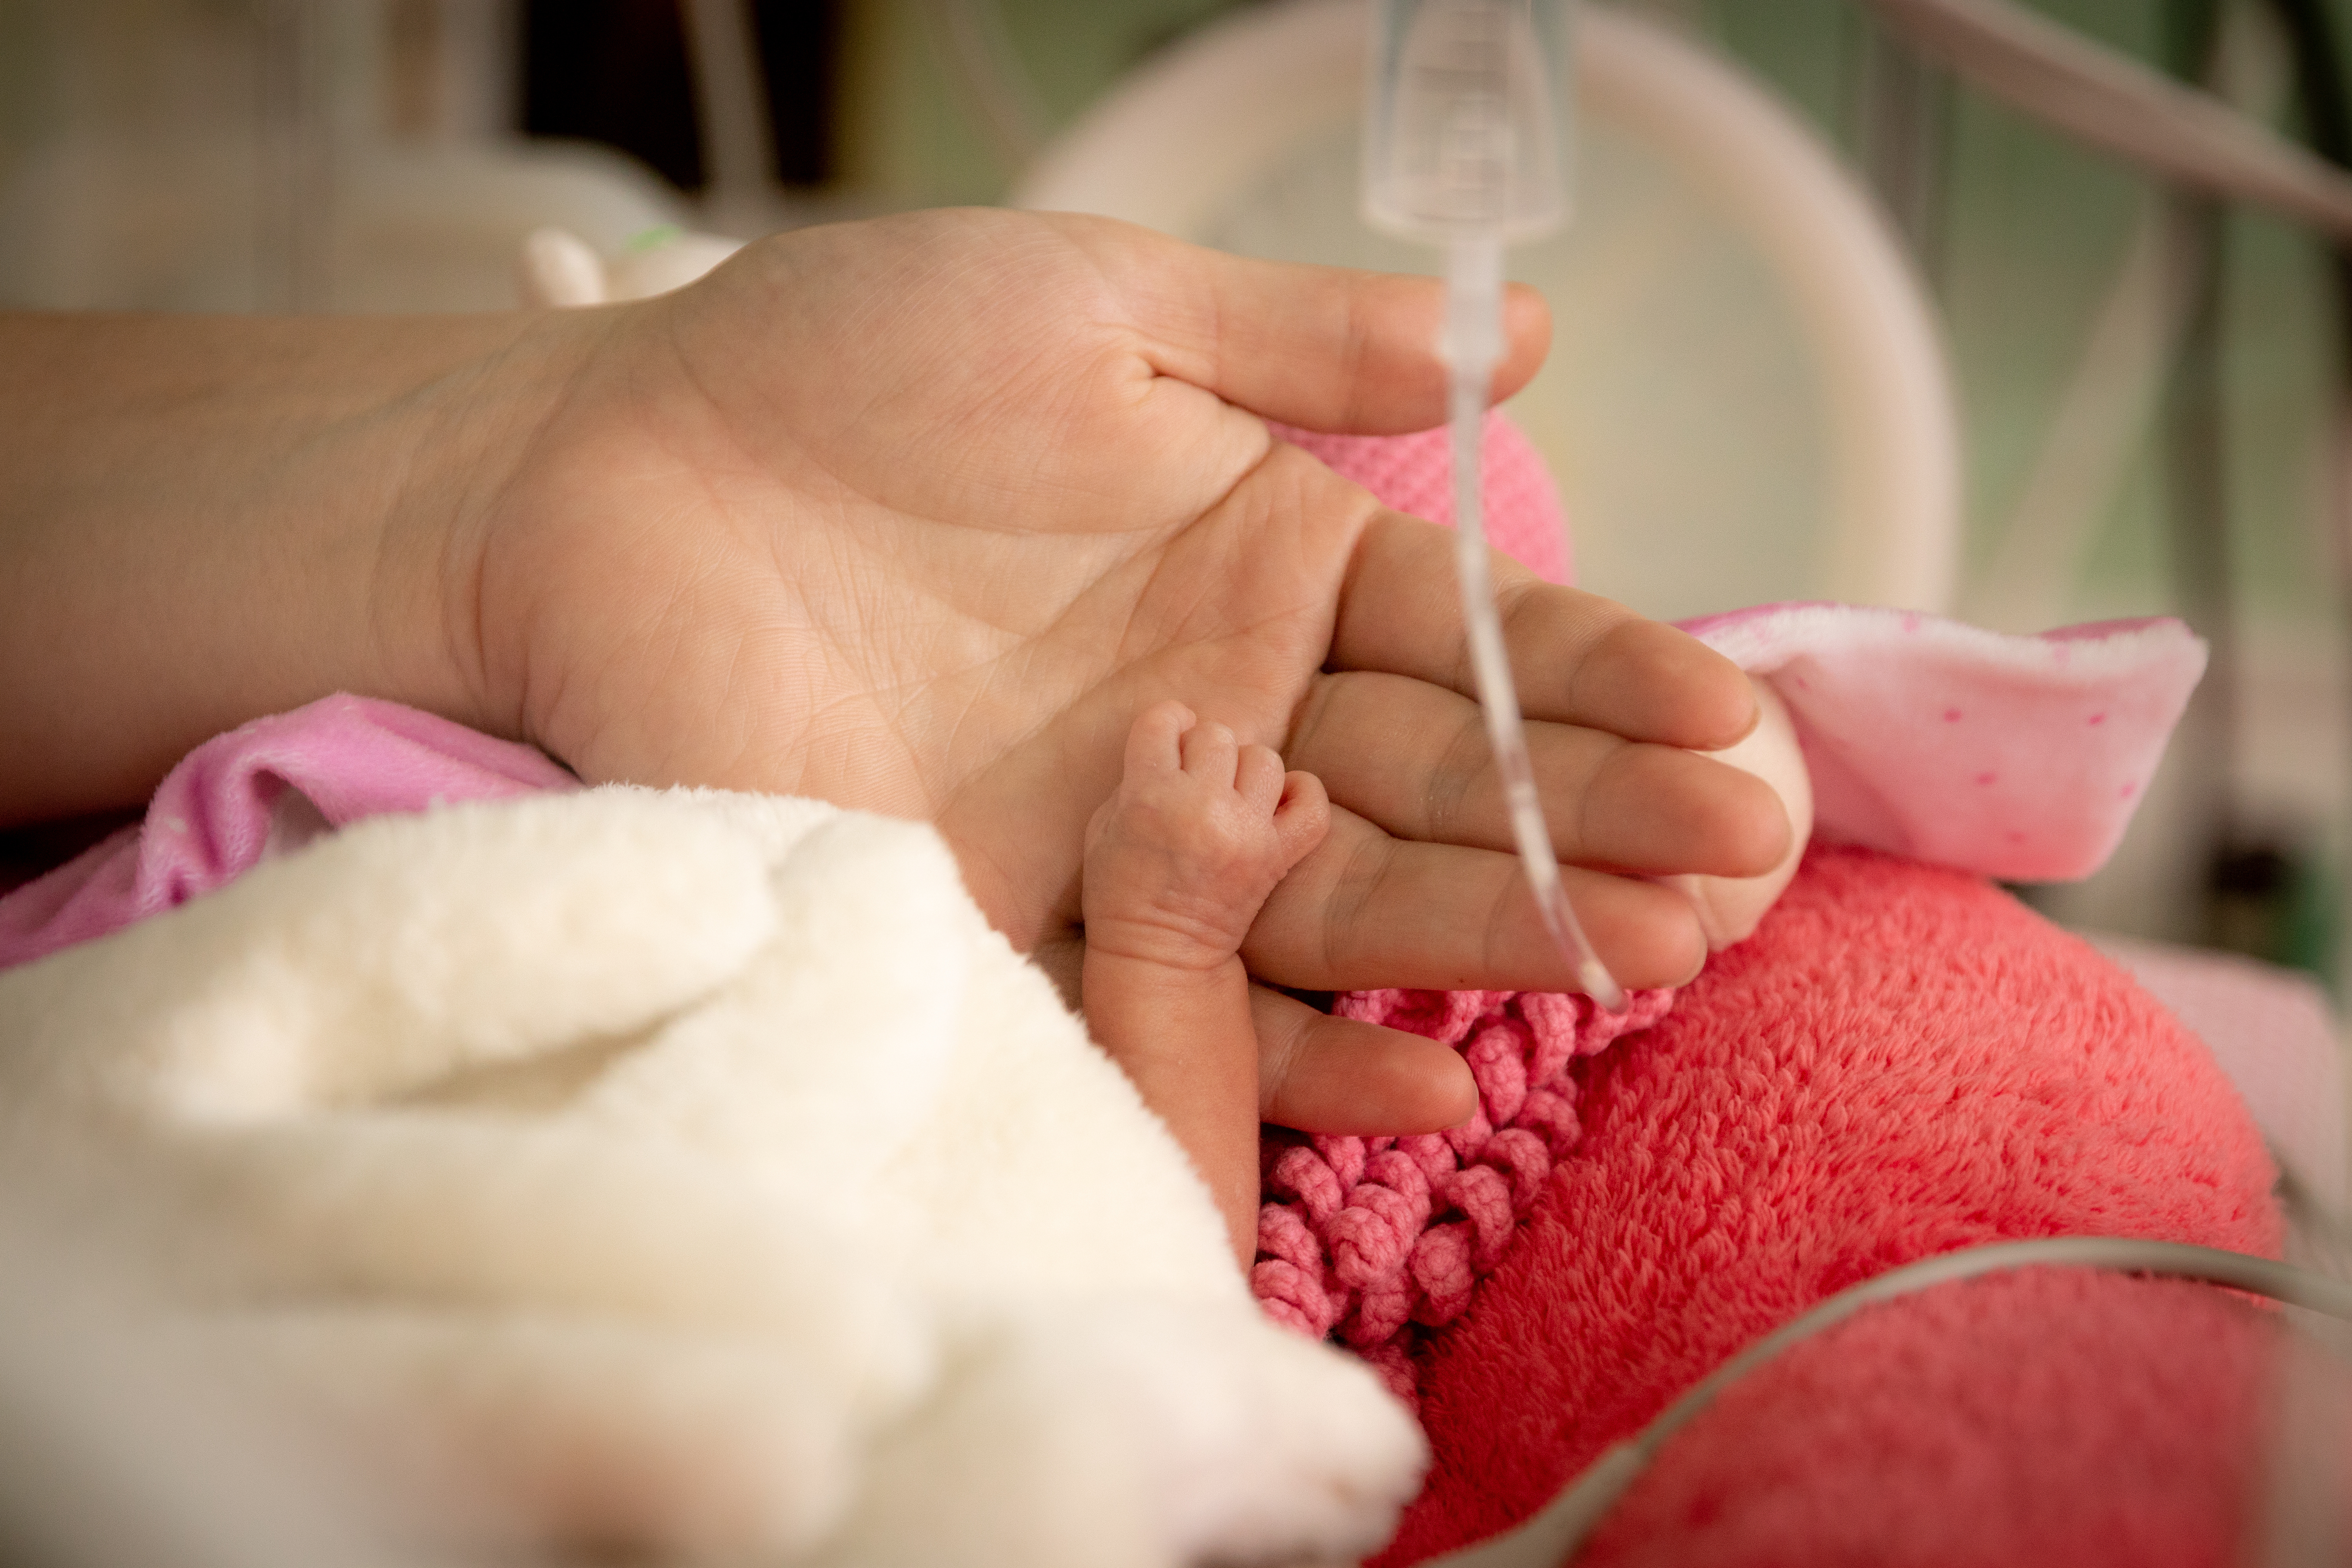 Sur les risques possibles pour la santé des nourrissons, de l'administration prénatale de stéroïdes aux mères qui risquent d'accoucher prématurément (Visuel Adobe Stock 341441686)